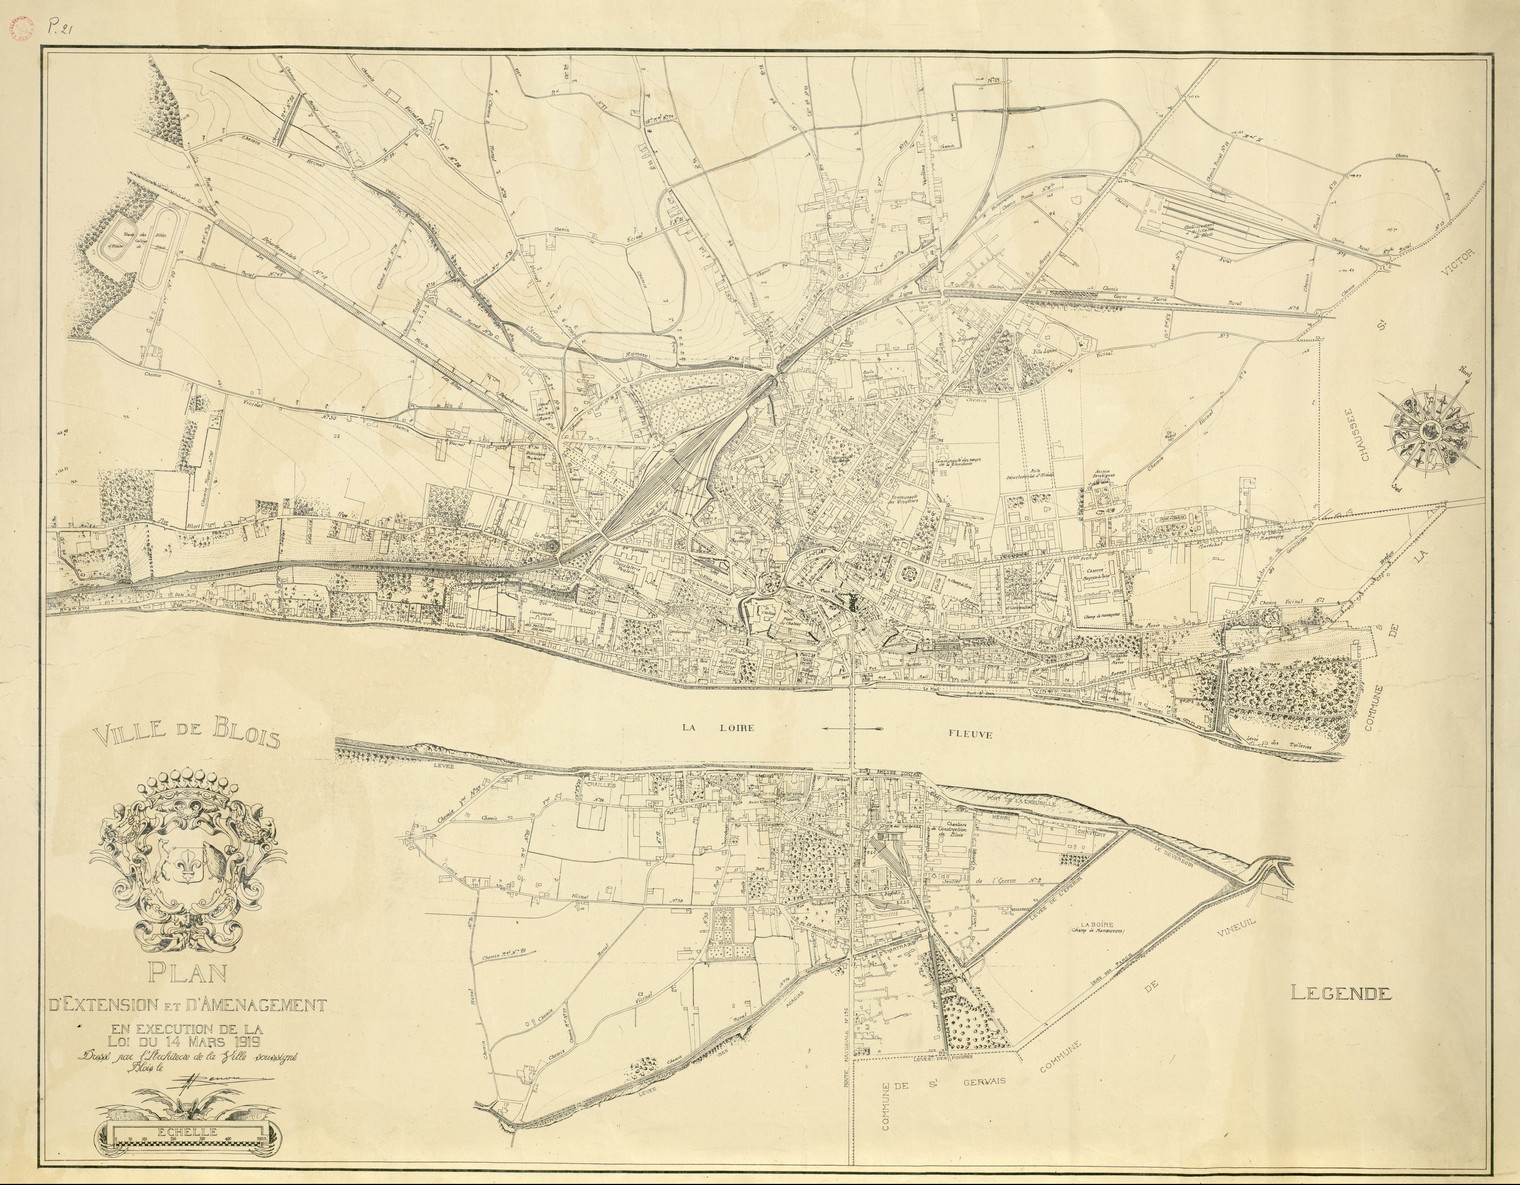 Plan d'extension et d'aménagement de Blois, vers 1925